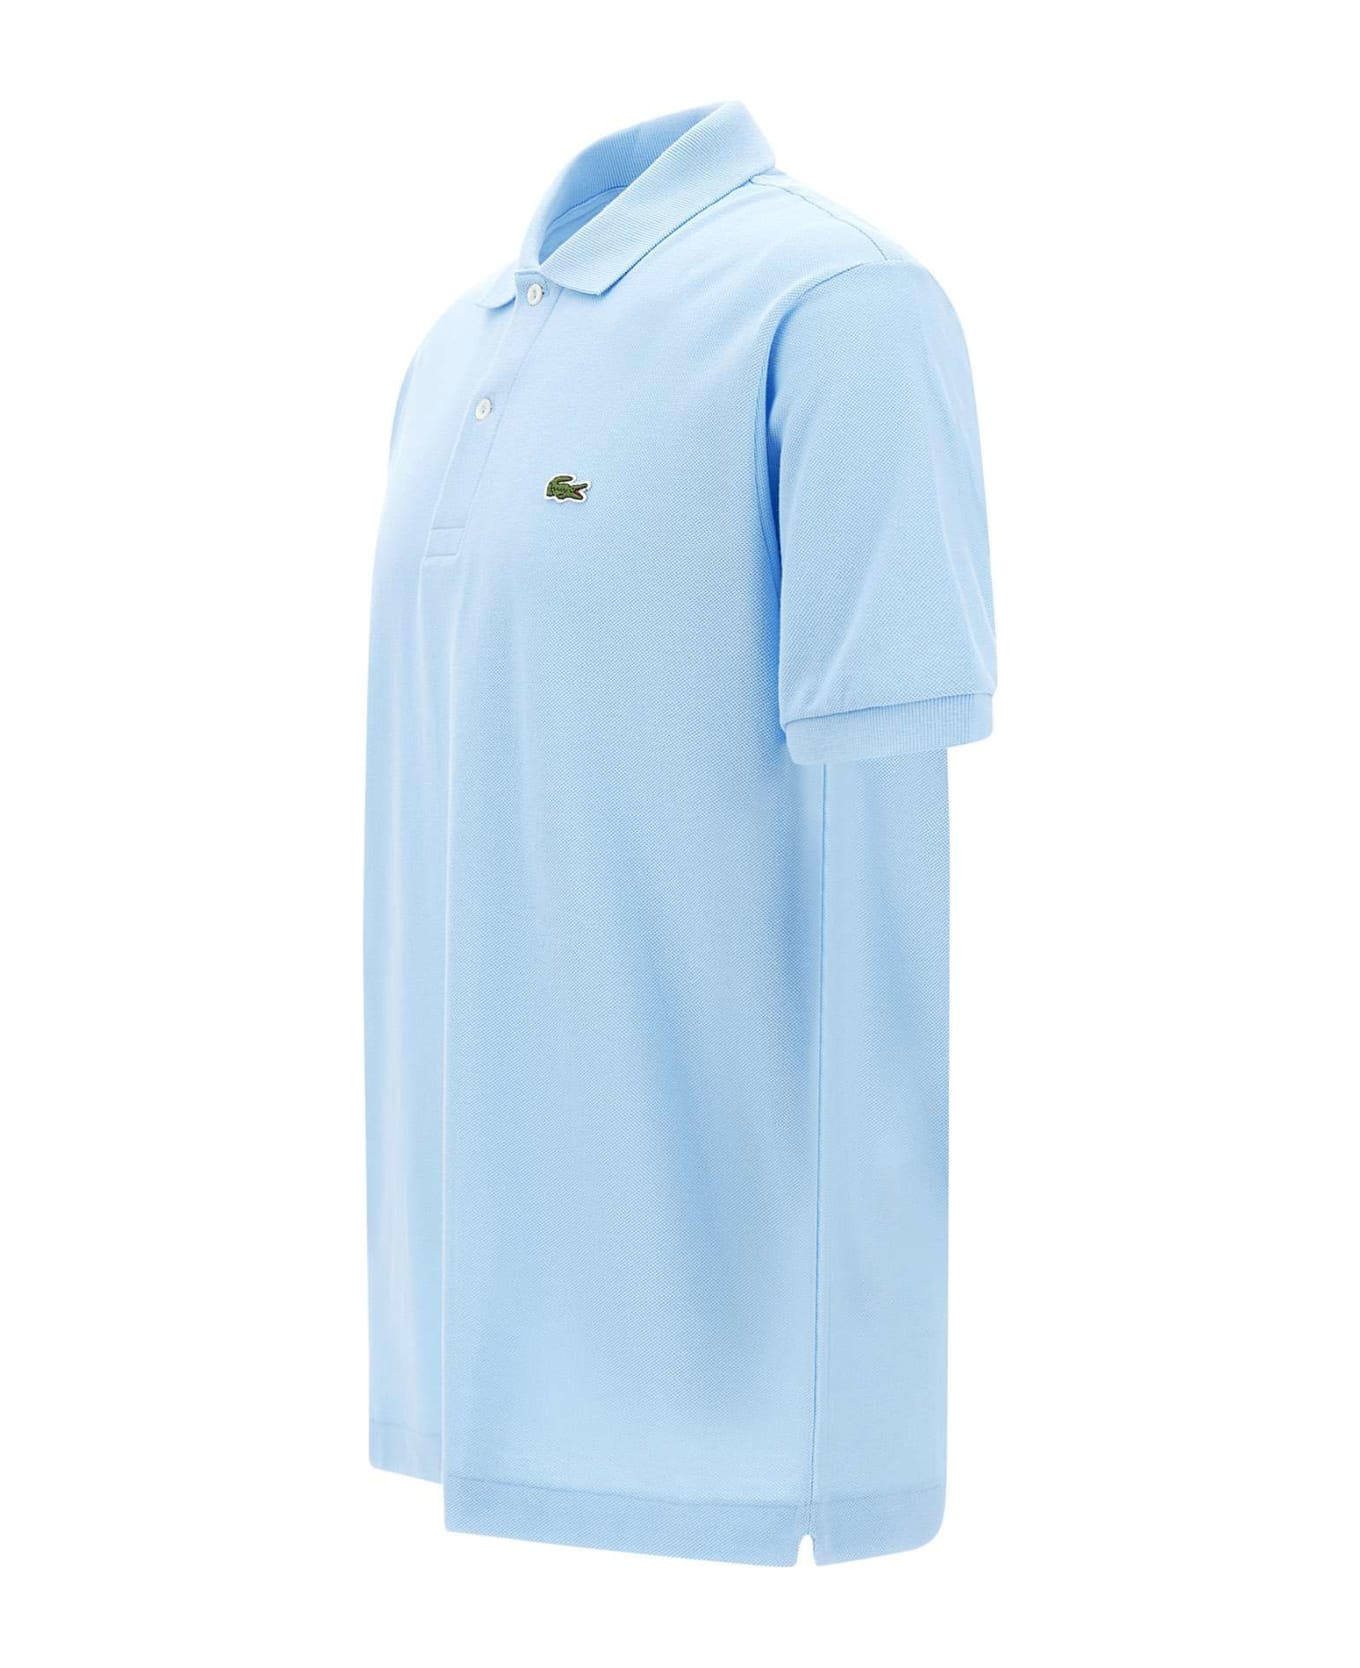 Lacoste Cotton Piquet Polo Shirt - LIGHT BLUE